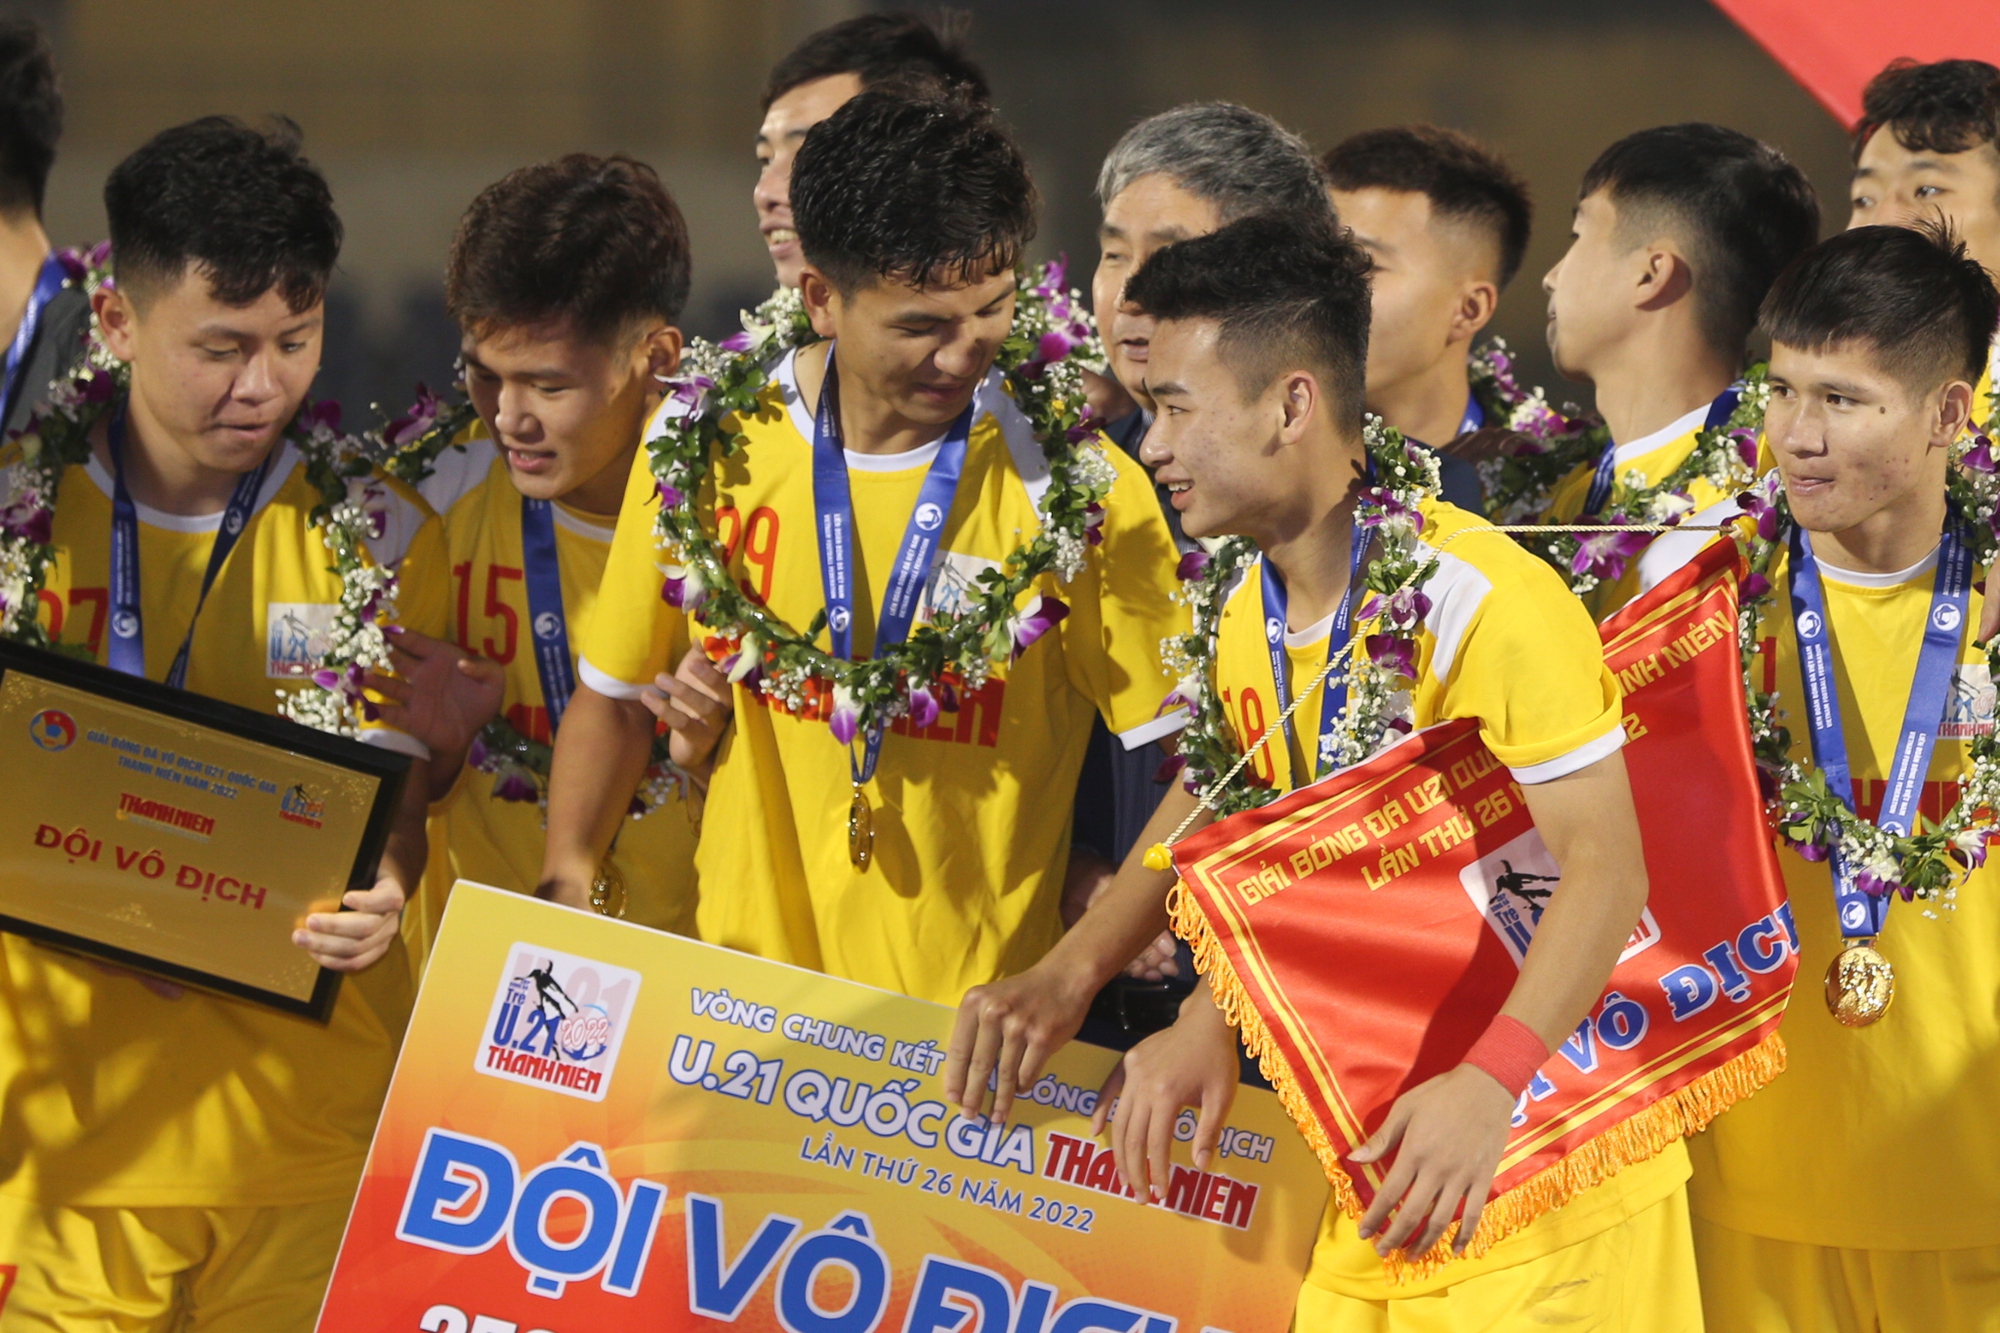 U21 Hà Nội vô địch U21 Quốc gia: Cảm xúc trái ngược giữa U21 Bình Dương và nhà vô địch - Ảnh 13.